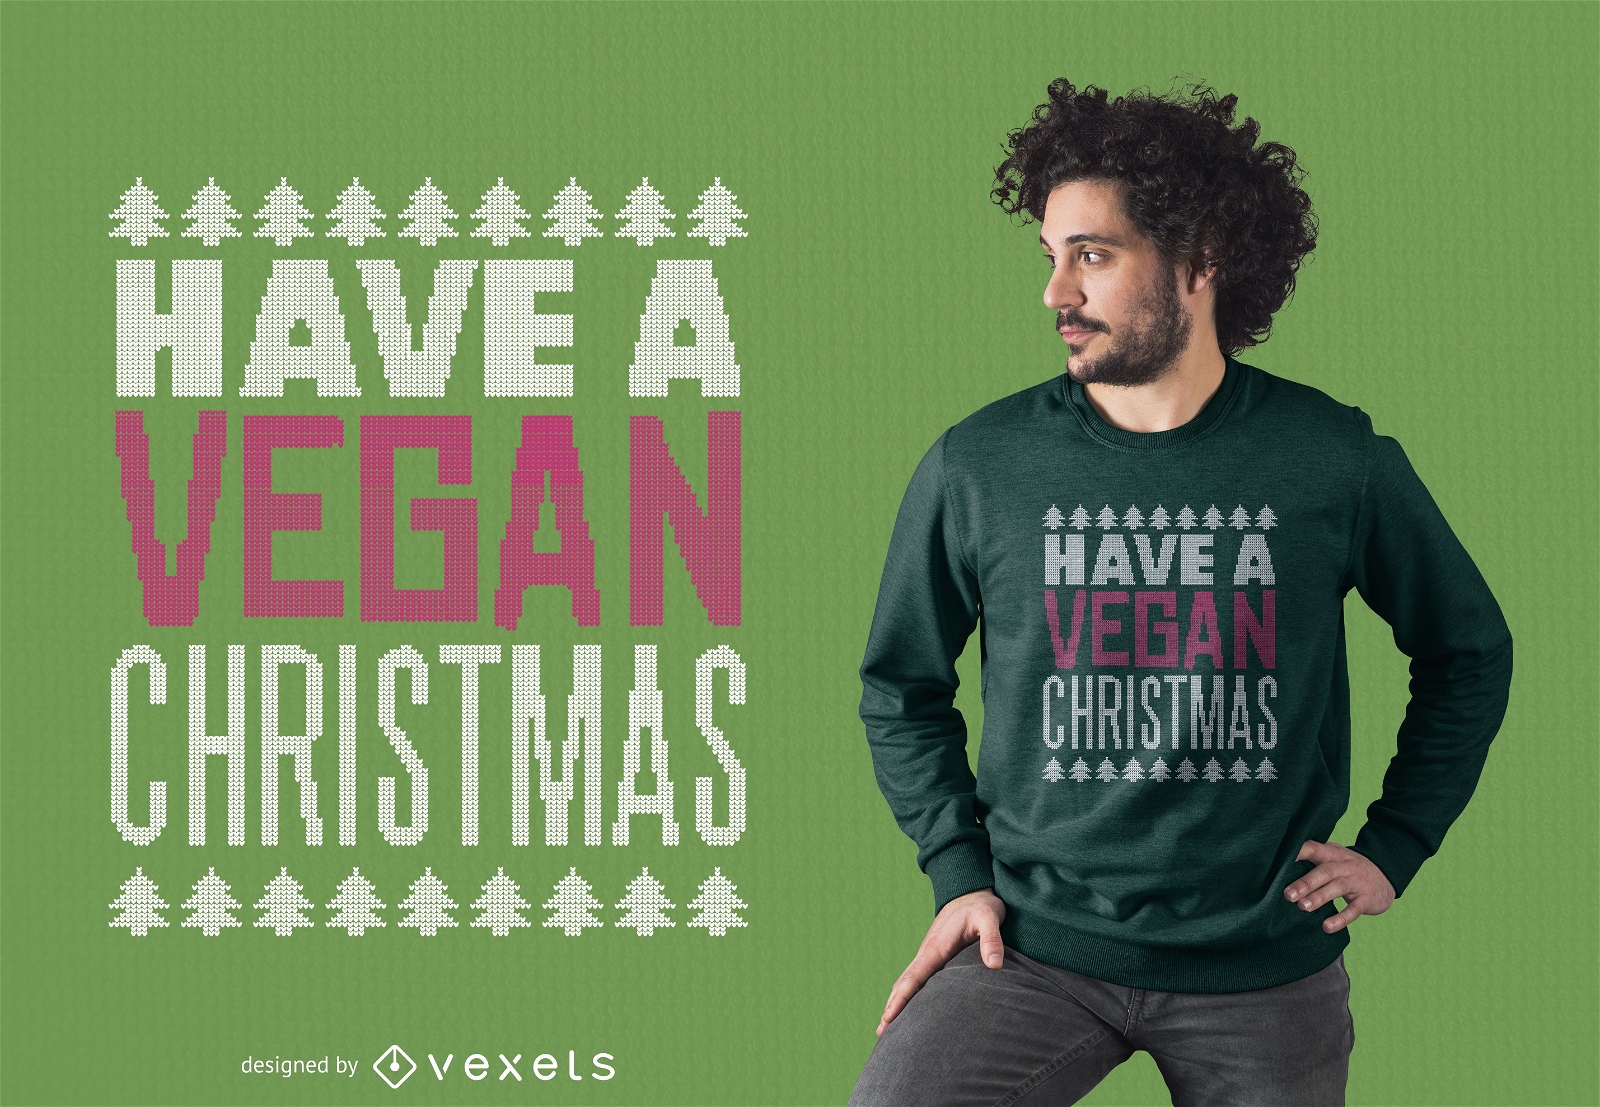 Diseño de camiseta navideña vegana